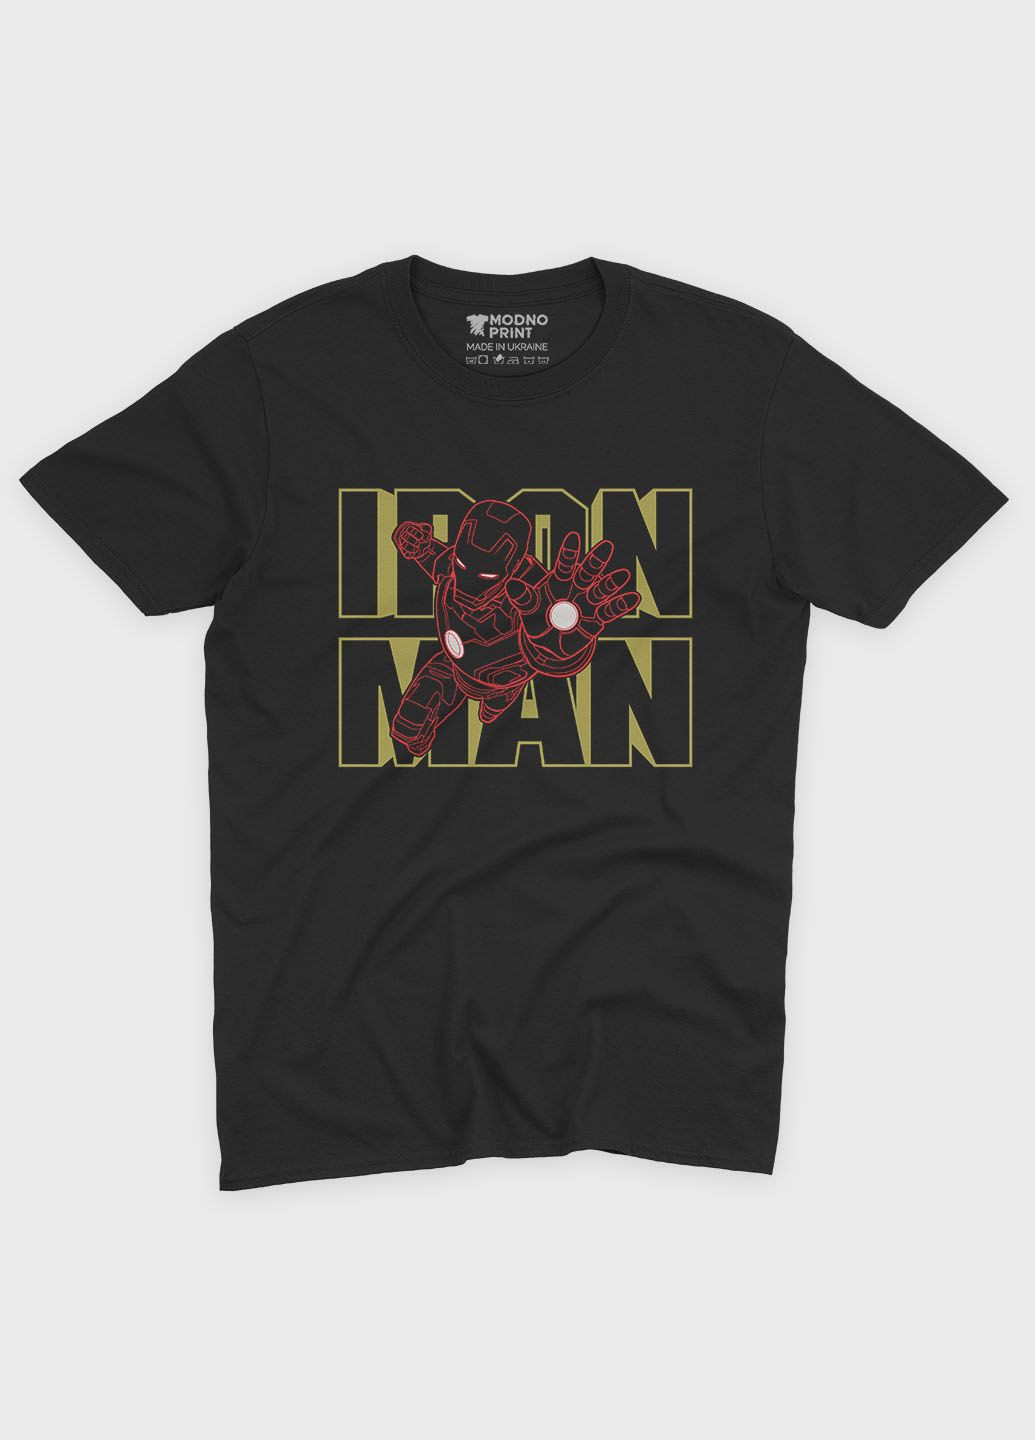 Черная демисезонная футболка для мальчика с принтом супергероя - железный человек (ts001-1-bl-006-016-008-b) Modno